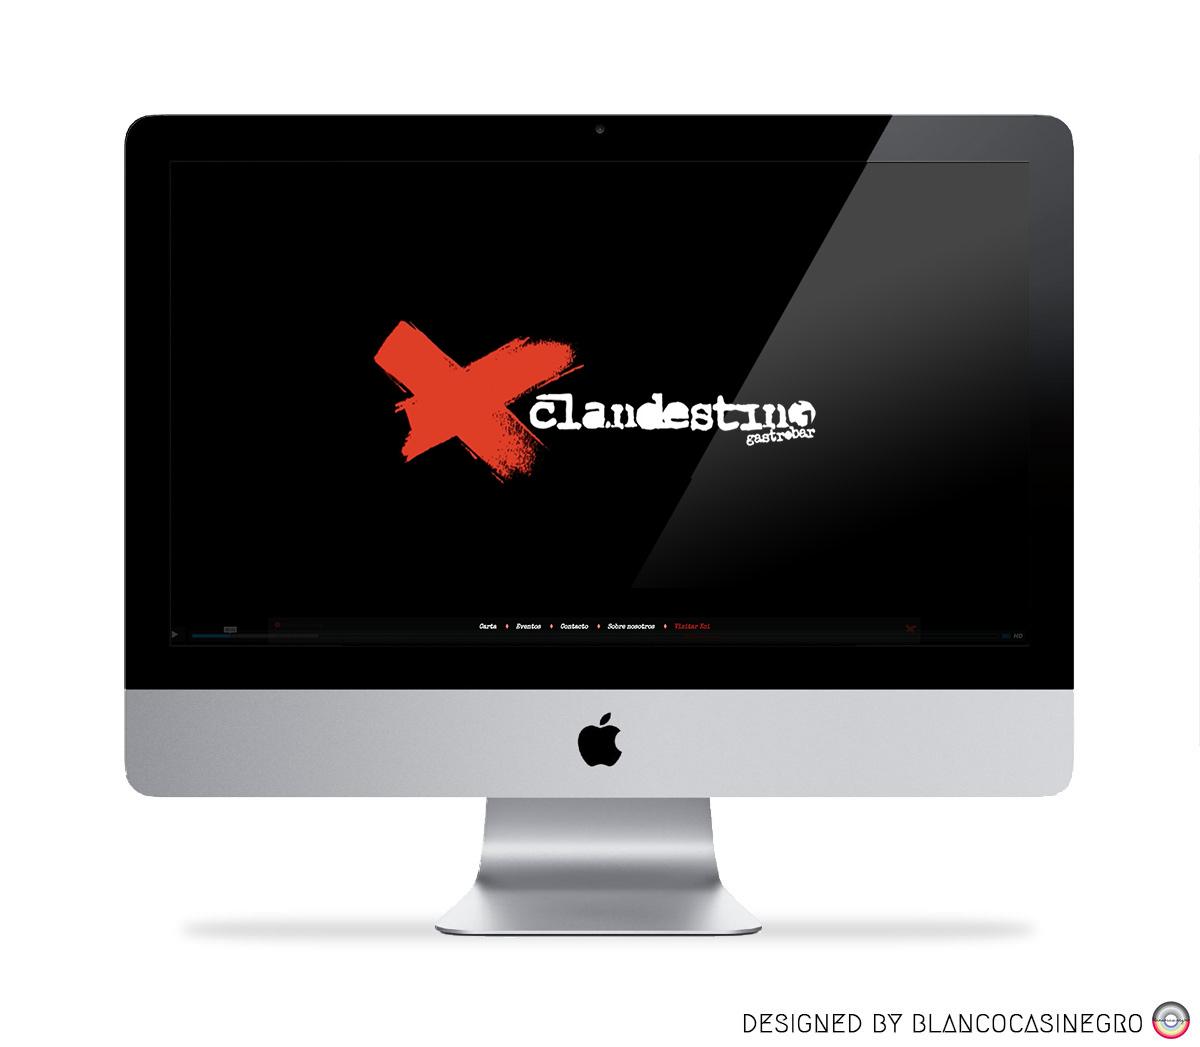 Clandestino || Creación de página web para restaurante en León